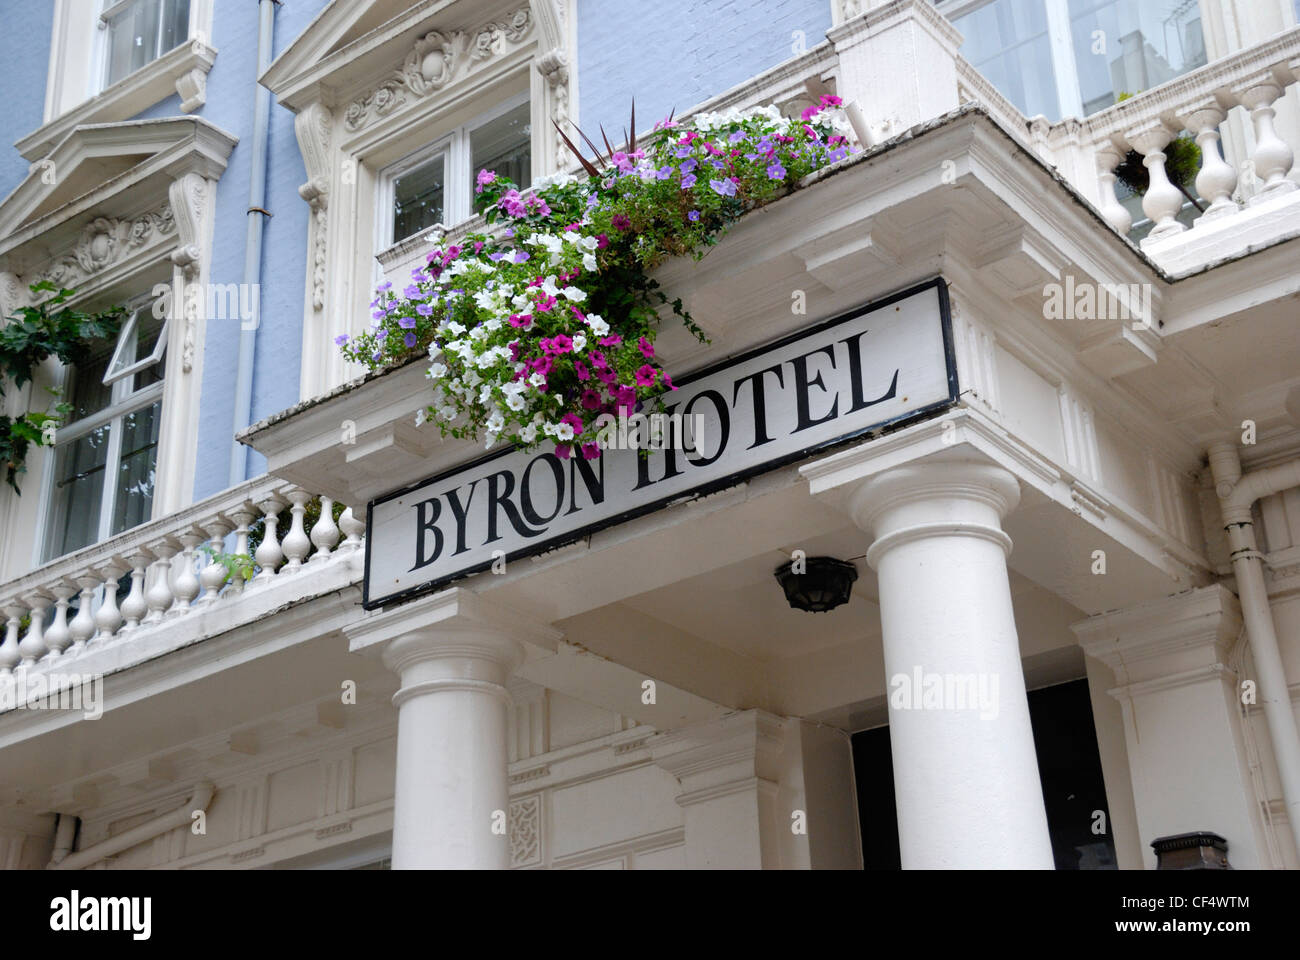 Le Byron Hôtel à Queensborough Terrace W2, nommé d'après le célèbre poète Lord Byron. Banque D'Images